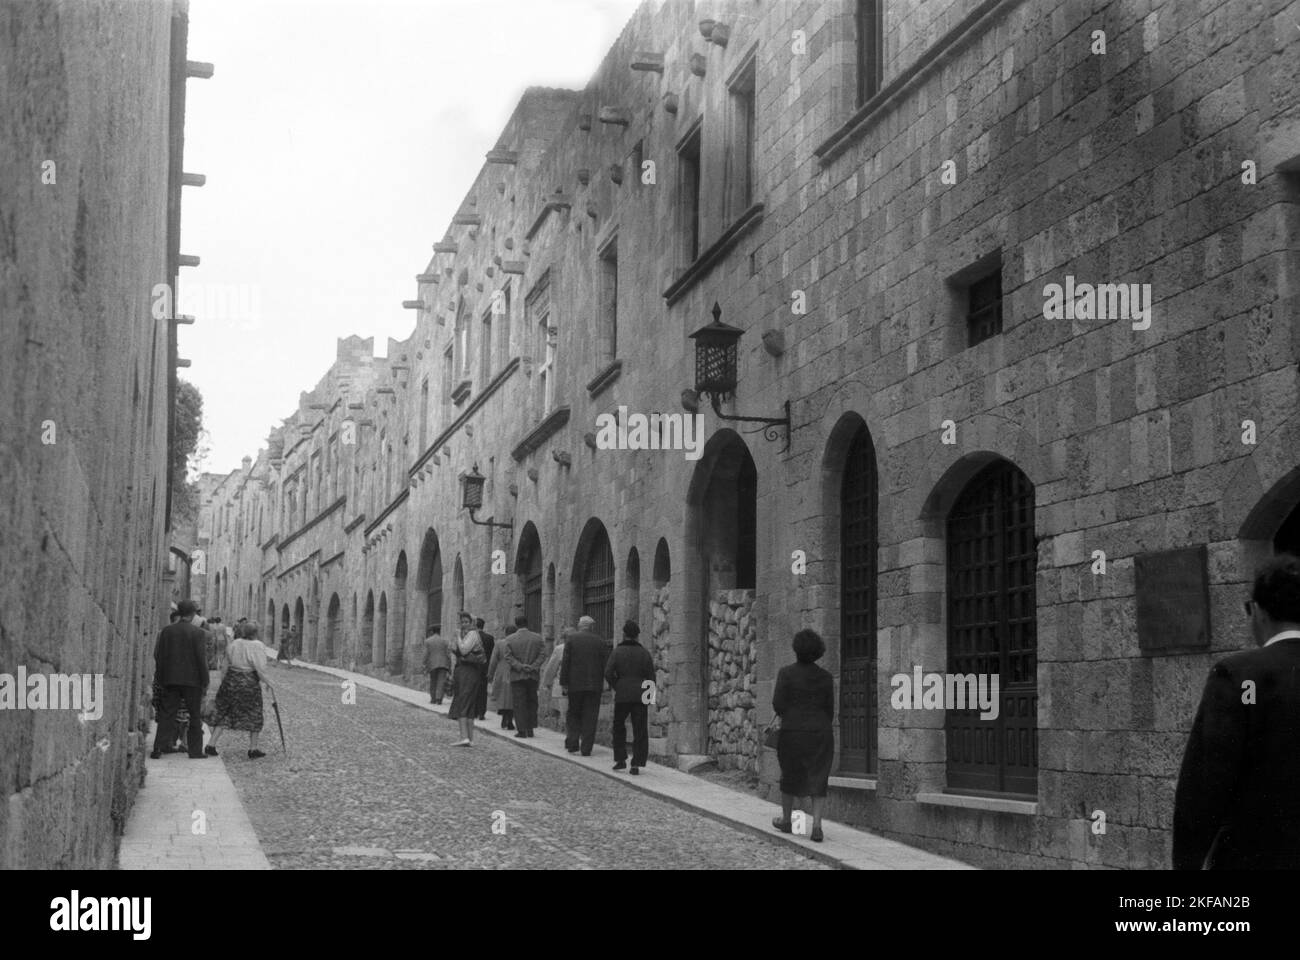 Eine Straße mit Kopfsteinpflaster führt an einem robusten Gebäudekomplex entlang, Griechenland, 1950er Jahre. A cobblestoned street near a castle like buidling in Greece, 1950s. Stock Photo